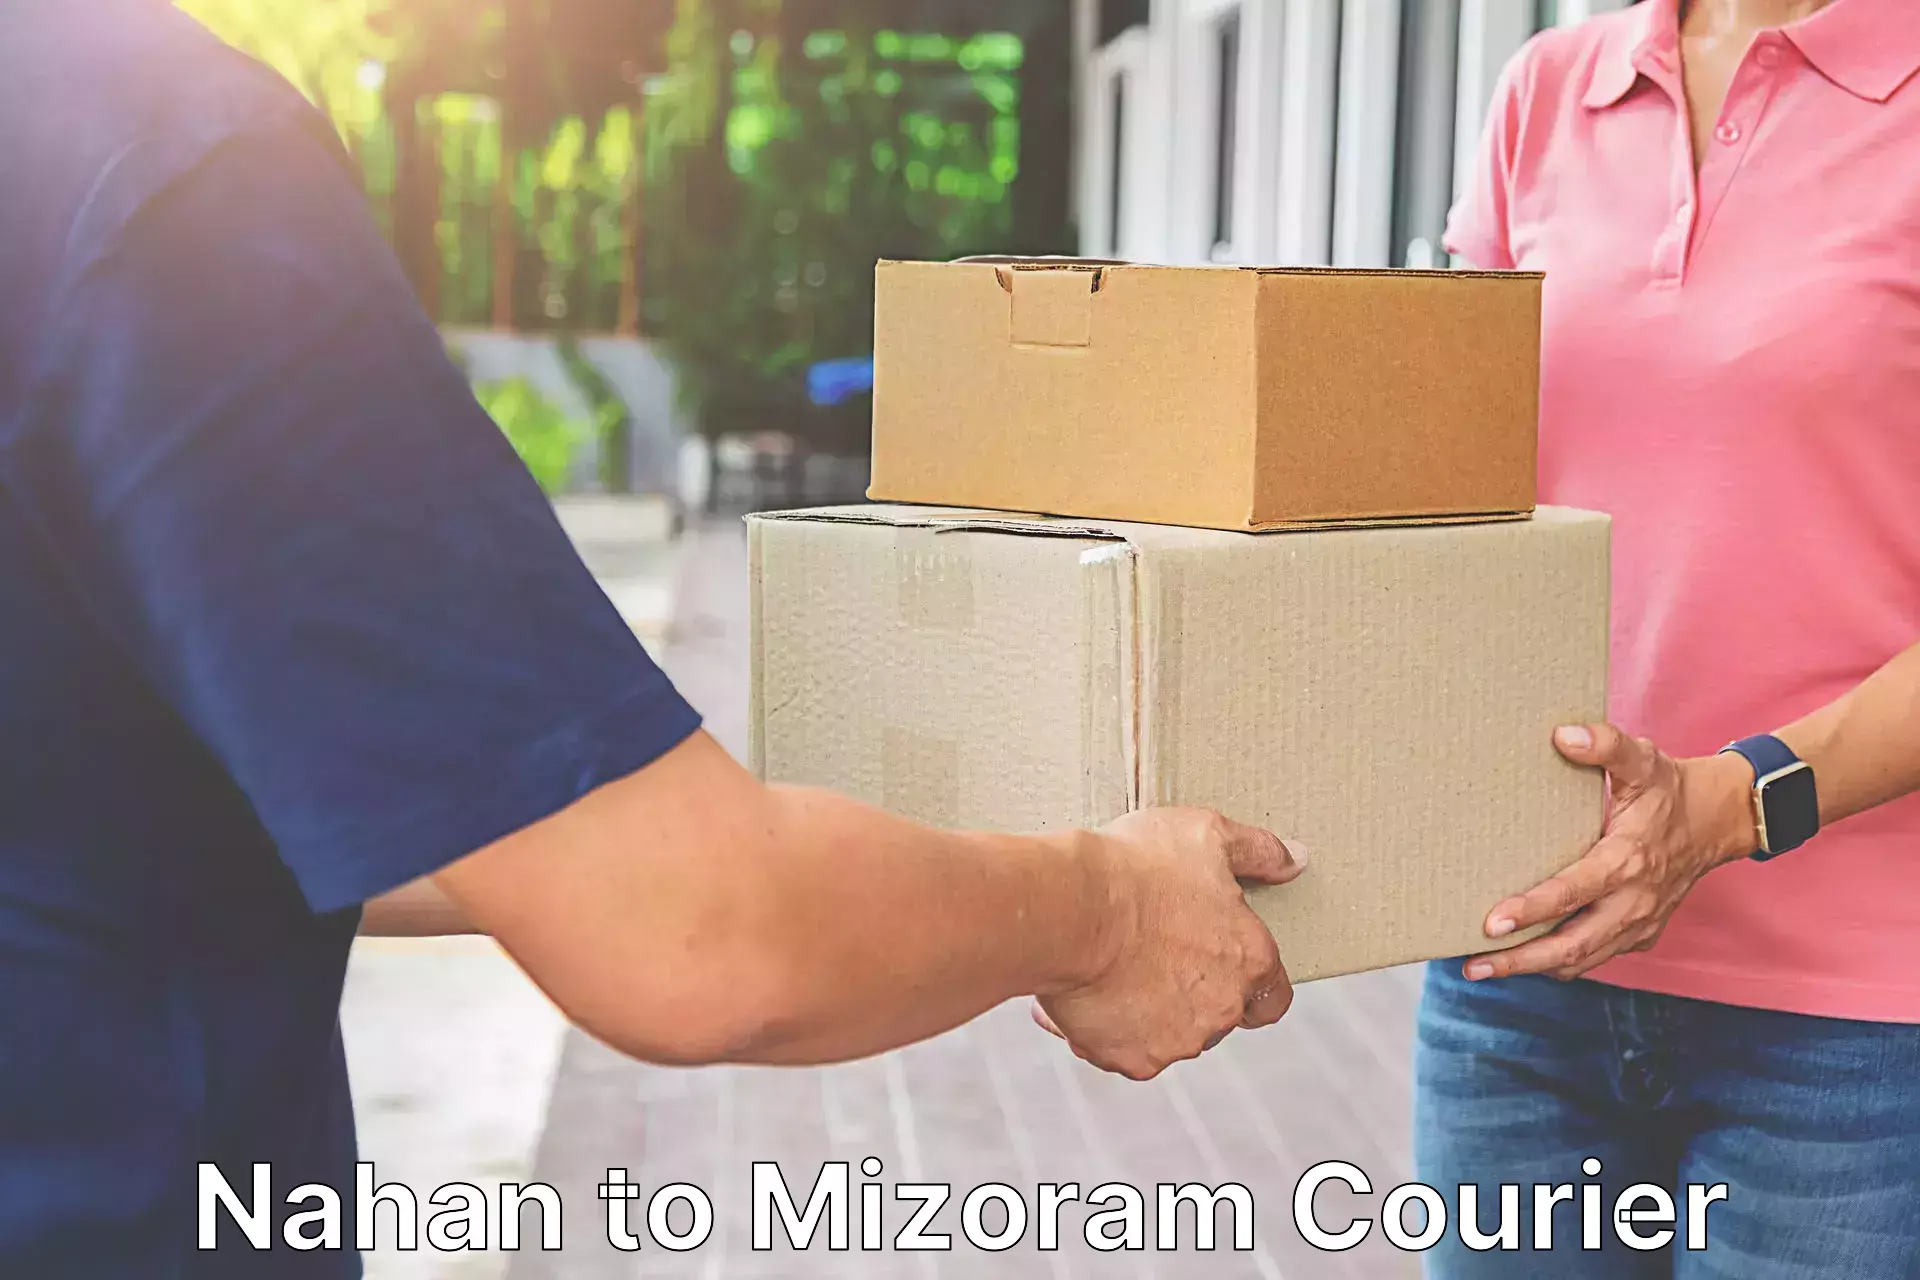 Door-to-door freight service Nahan to Mizoram